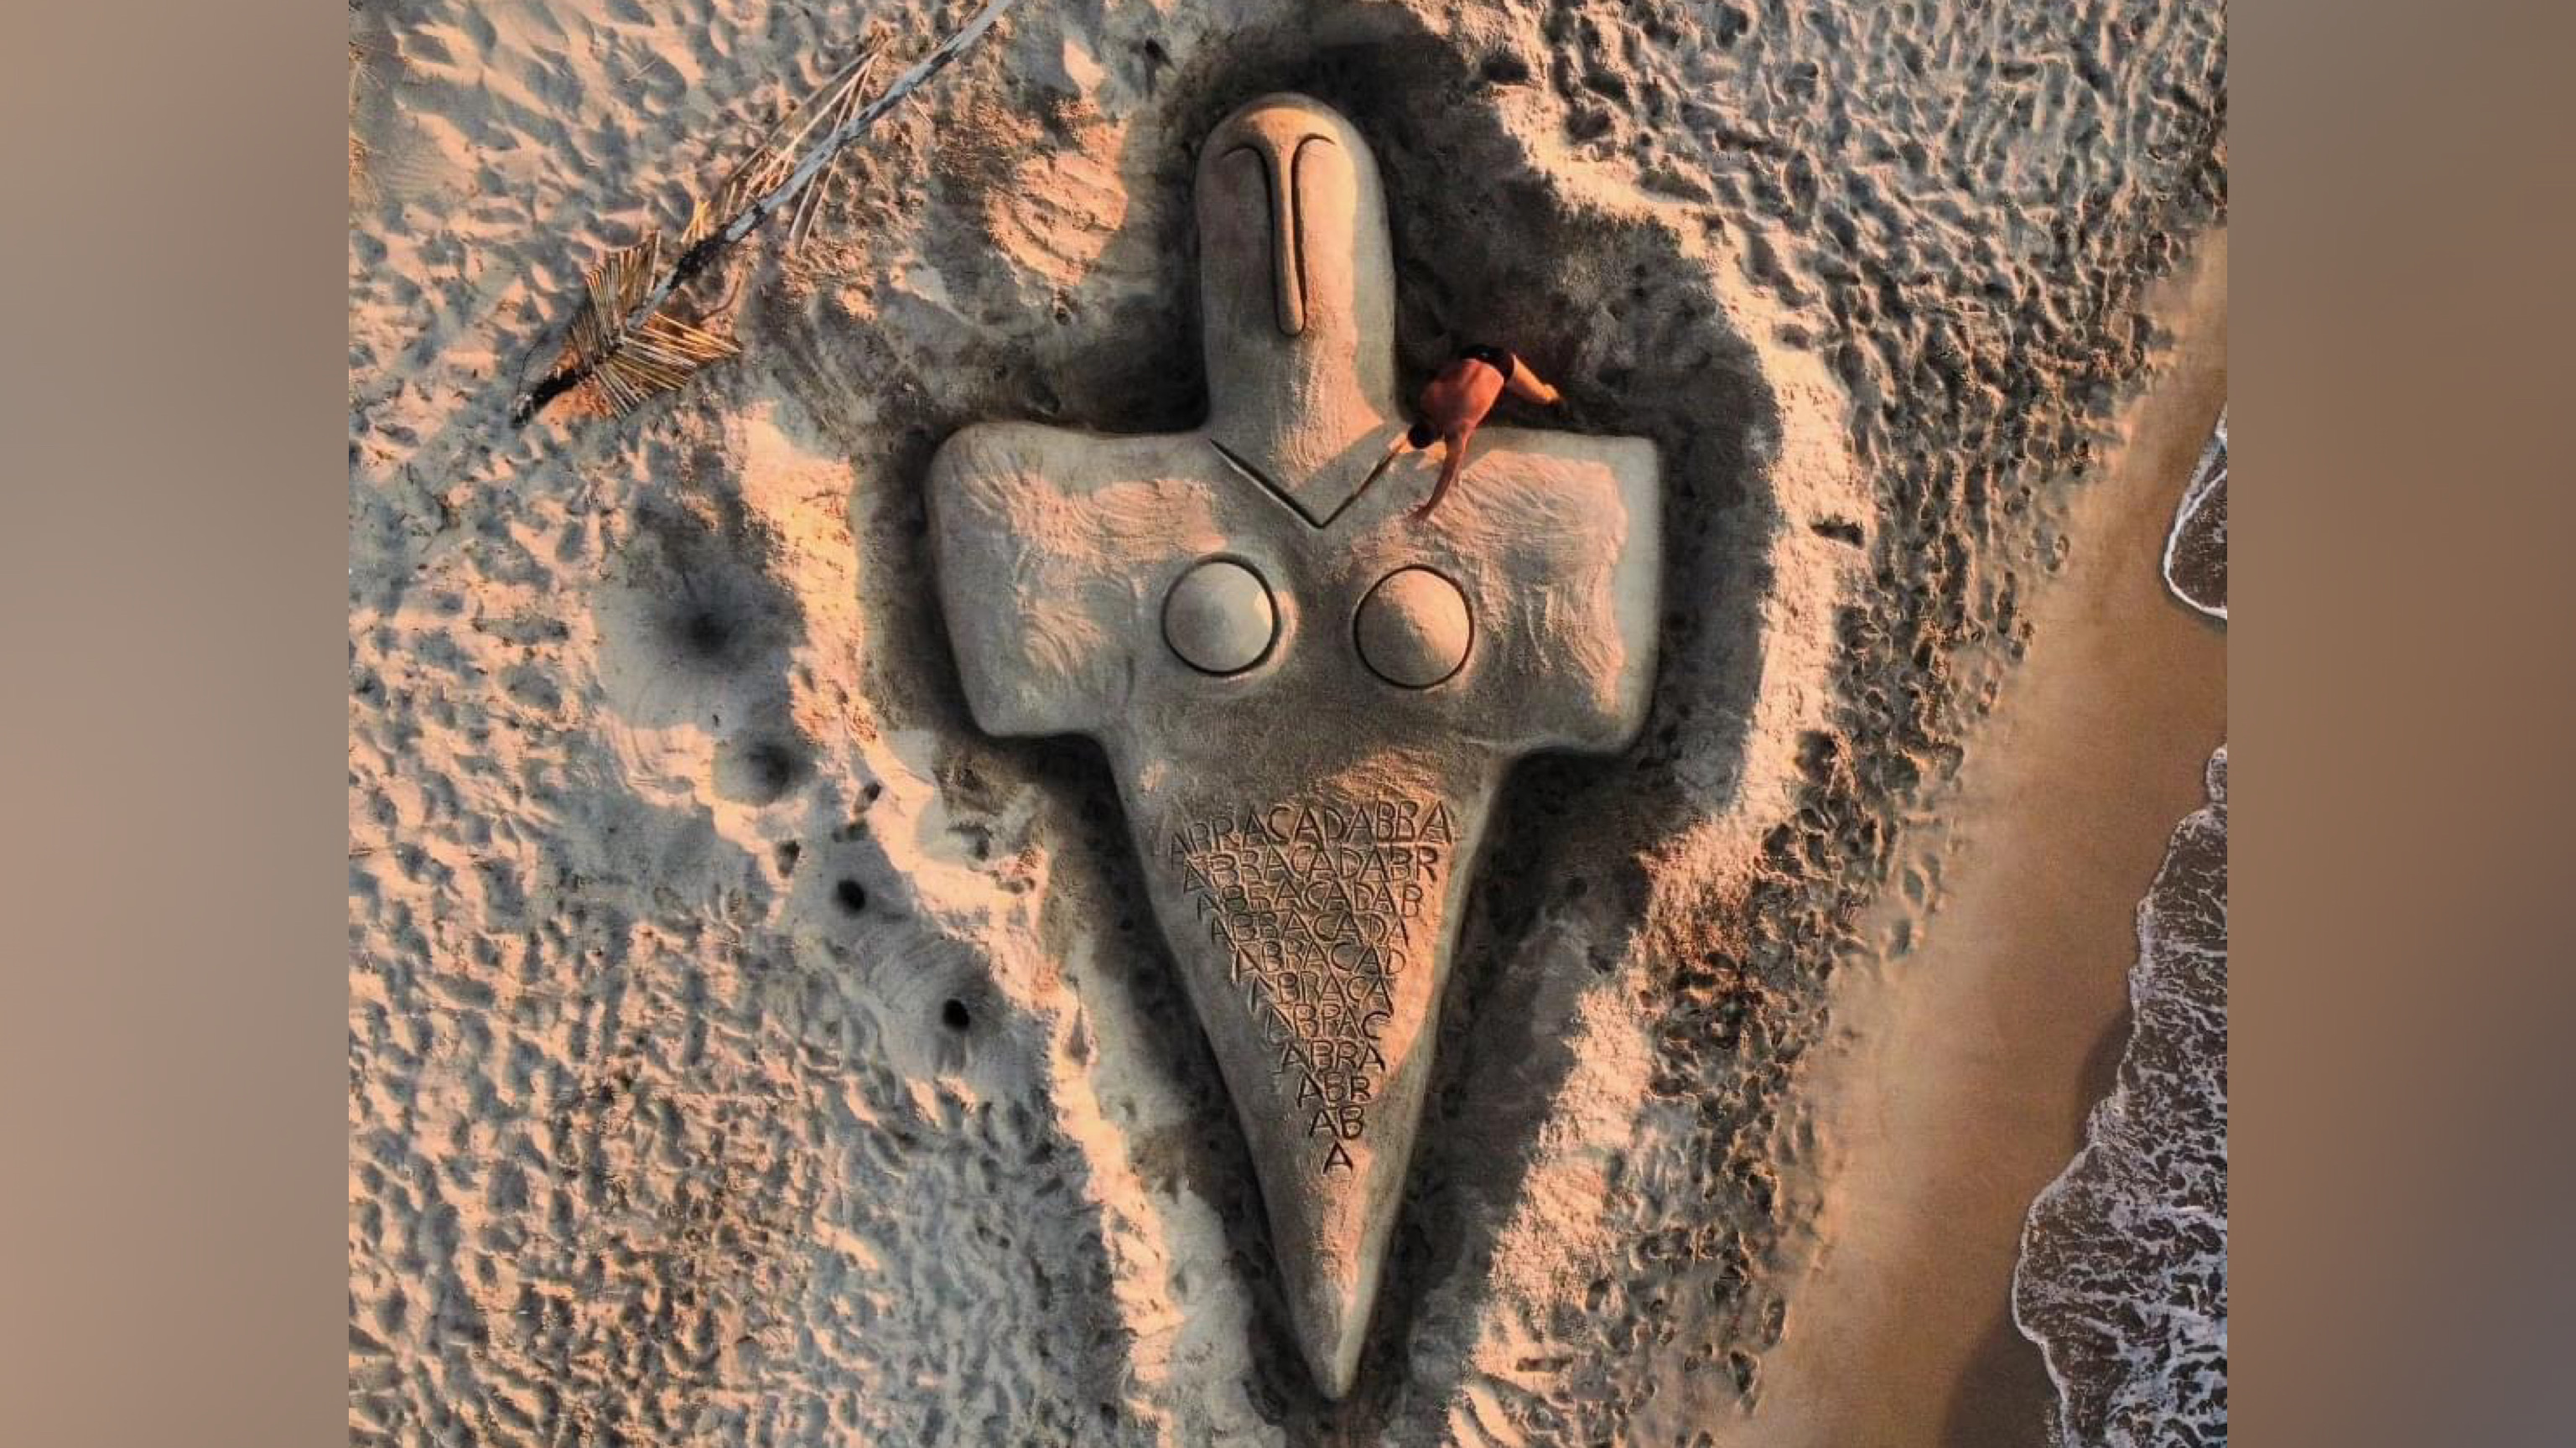 Spettacolare Dea Madre scolpita nella sabbia: ecco l'ultima opera di Nicola Urru